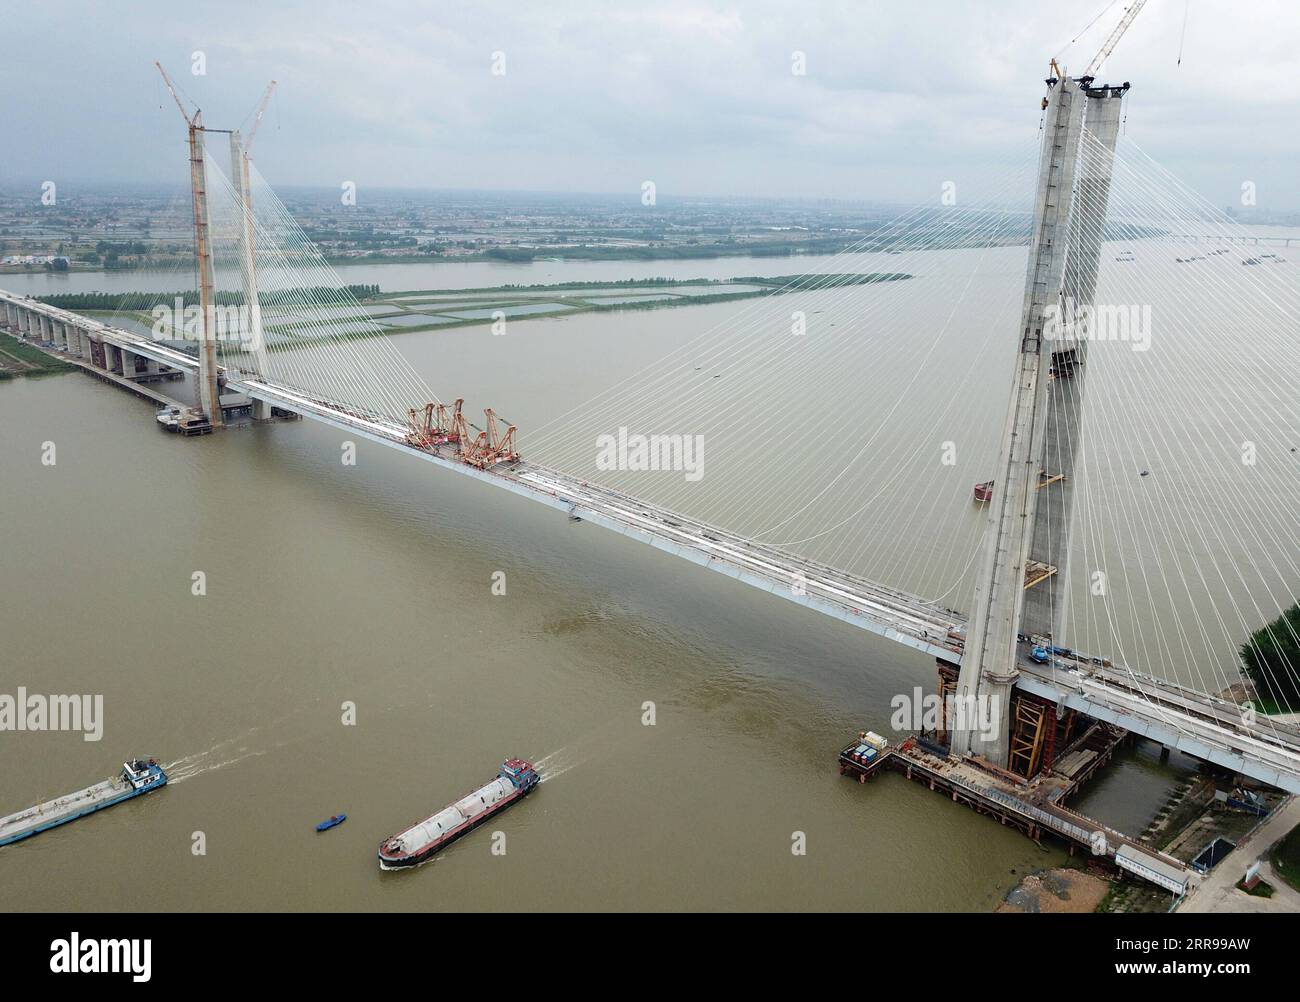 210603 -- WUHAN, 3. Juni 2021 -- Luftaufnahme aufgenommen am 3. Juni 2021 zeigt die Bianyuzhou Yangtze River Bridge an der Grenze der zentralchinesischen Provinz Hubei und der ostchinesischen Provinz Jiangxi. Die Brücke verbindet den Bezirk Huangmei der zentralchinesischen Provinz Hubei mit der Stadt Jiujiang der ostchinesischen Provinz Jiangxi und ist Teil der Anqing-Jiujiang Railway. Die Bahnstrecke hat eine geplante Geschwindigkeit von 350 Stundenkilometern für die beiden Hochgeschwindigkeitsstrecken und 200 Stundenkilometern für die beiden anderen reservierten Personen- und Güterstrecken. CHINA-ANQING-JIUJIANG-RAILWAY-BIANYUZHOU YANGTZE RIVER BRIDGE CLOSURE CN Stockfoto